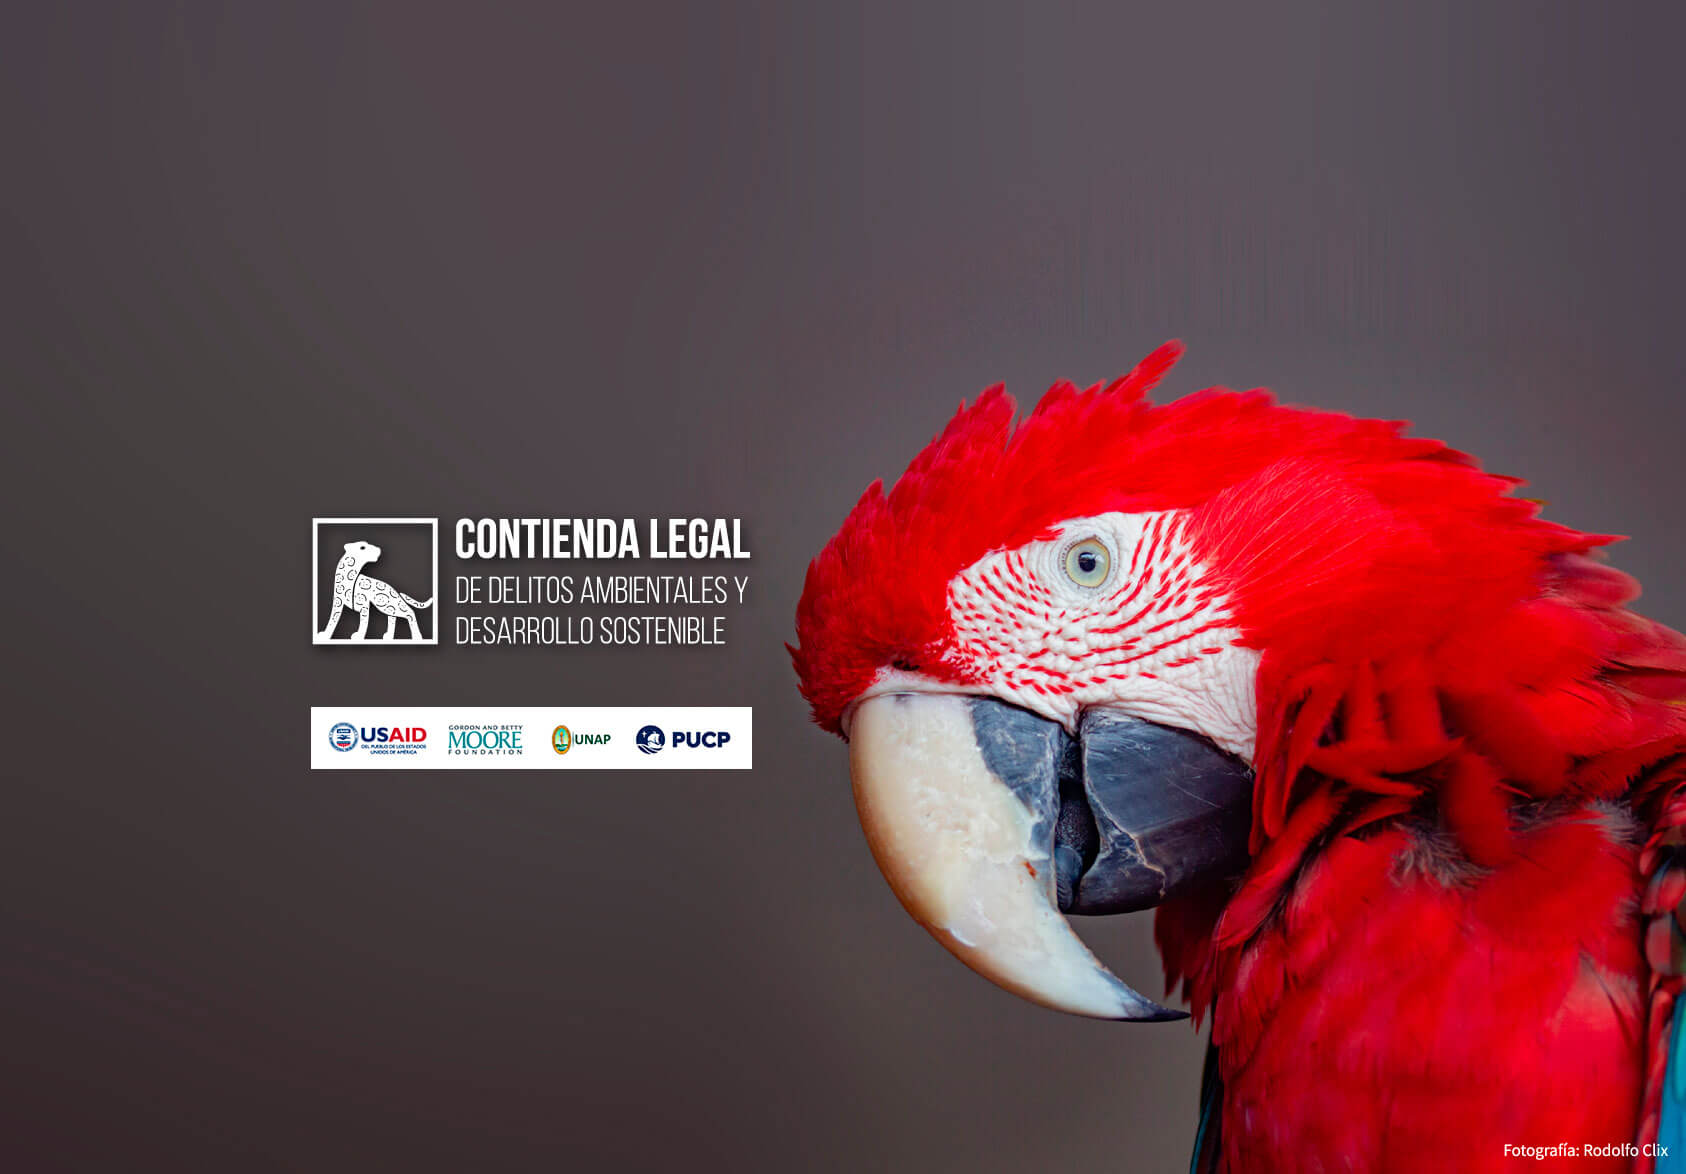 Primera Contienda Legal especializada en delitos ambientales y desarrollo sostenible en la Amazonía